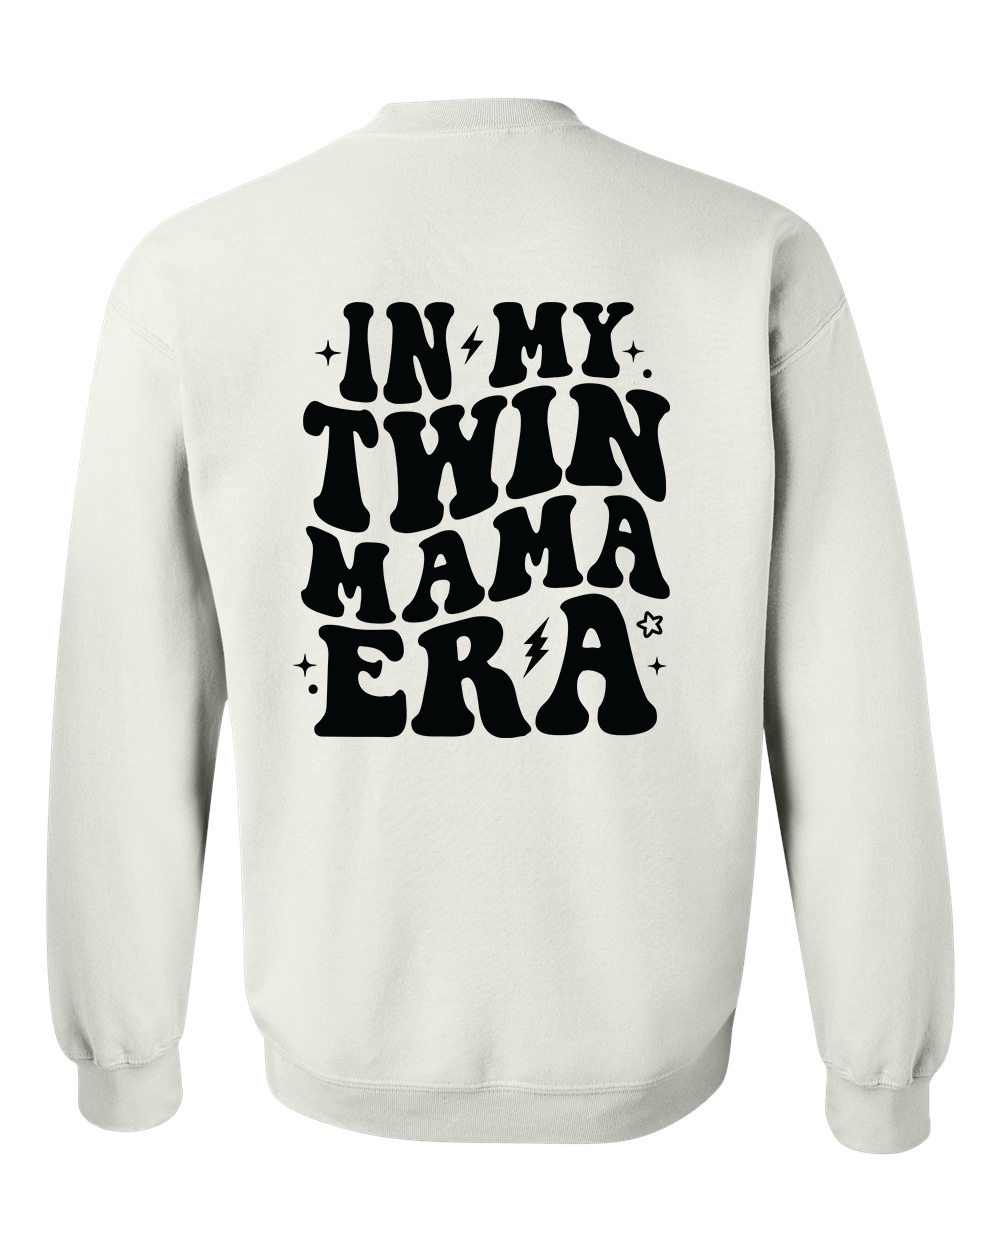 In My Twin Mama Era Crewneck Sweatshirt - In Grey & White